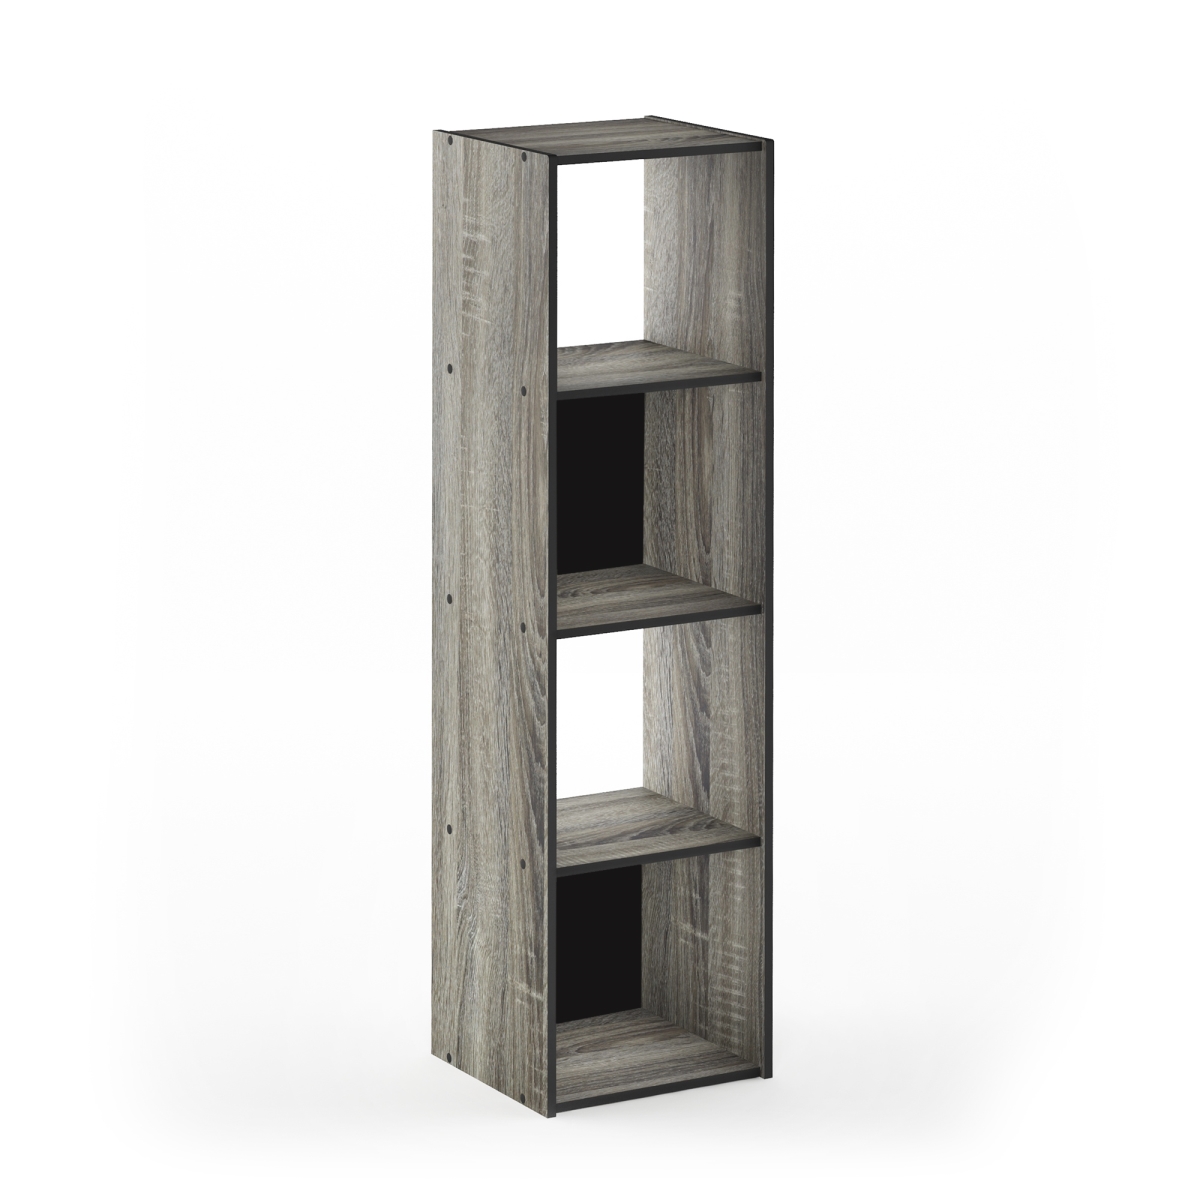 18052gyw 4 X 1 In. Pelli Cubic Storage Cabinet, French Oak Grey & Black